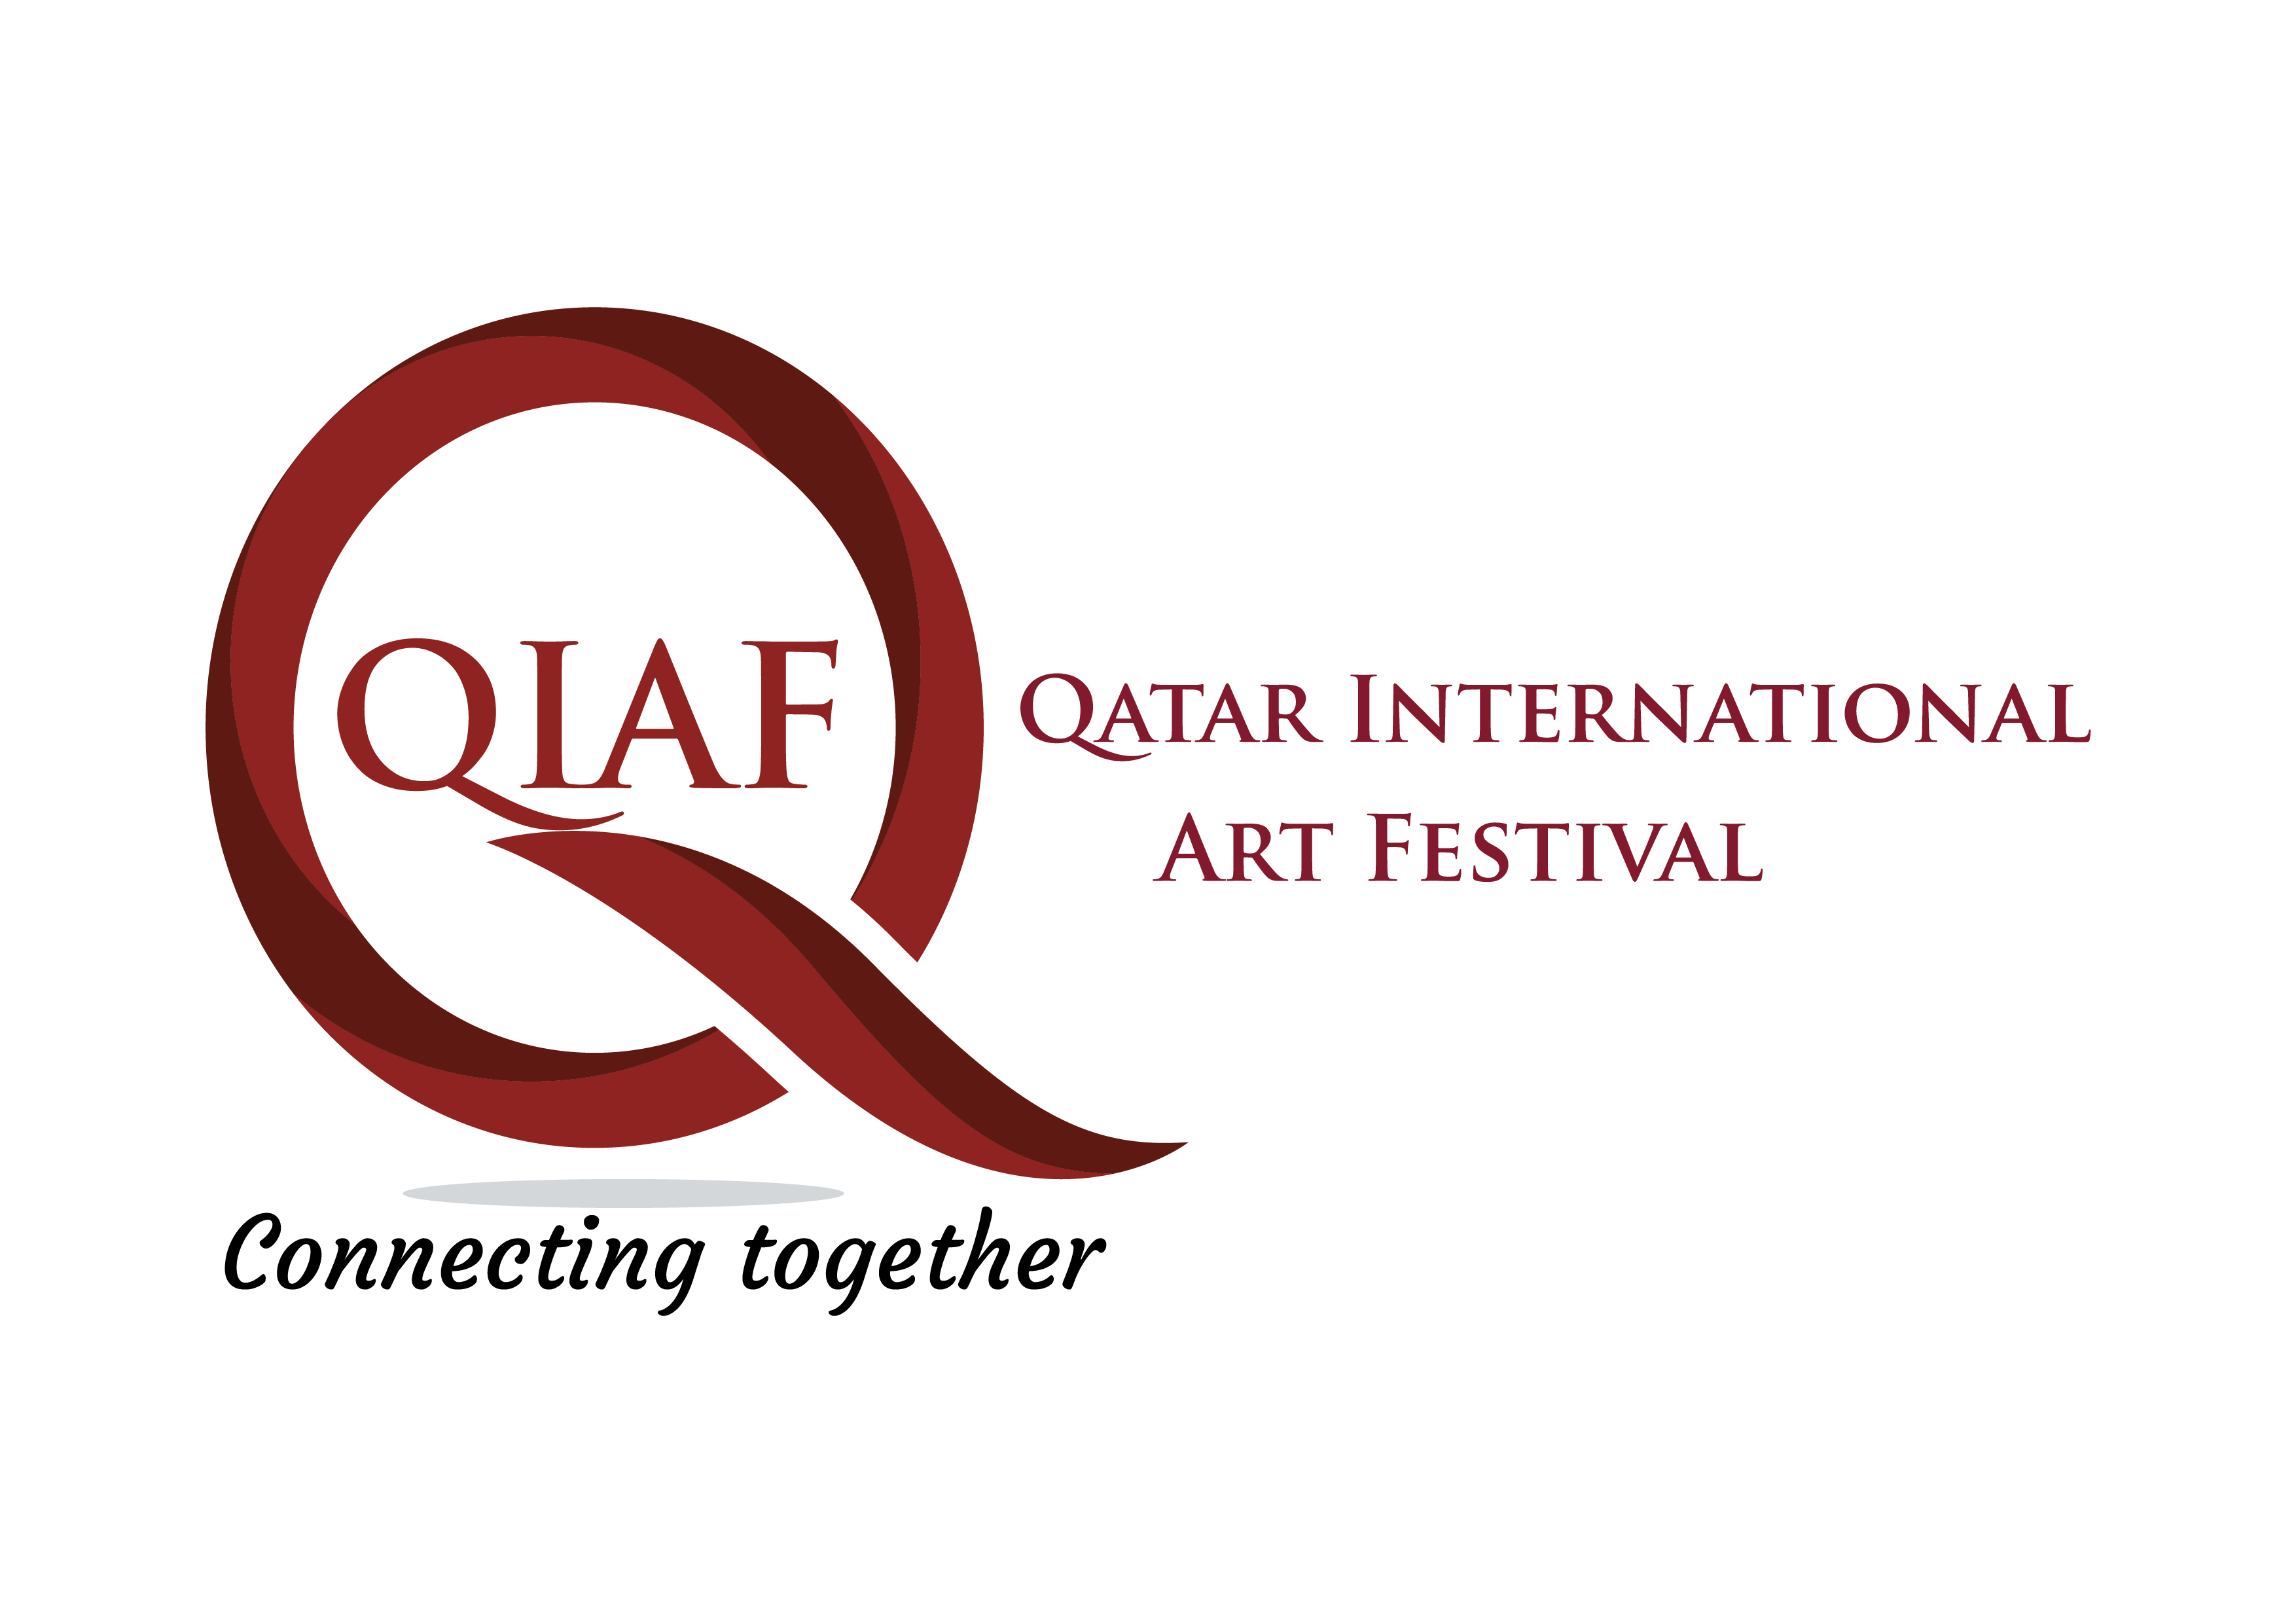 QIAF ART FESTIVAL